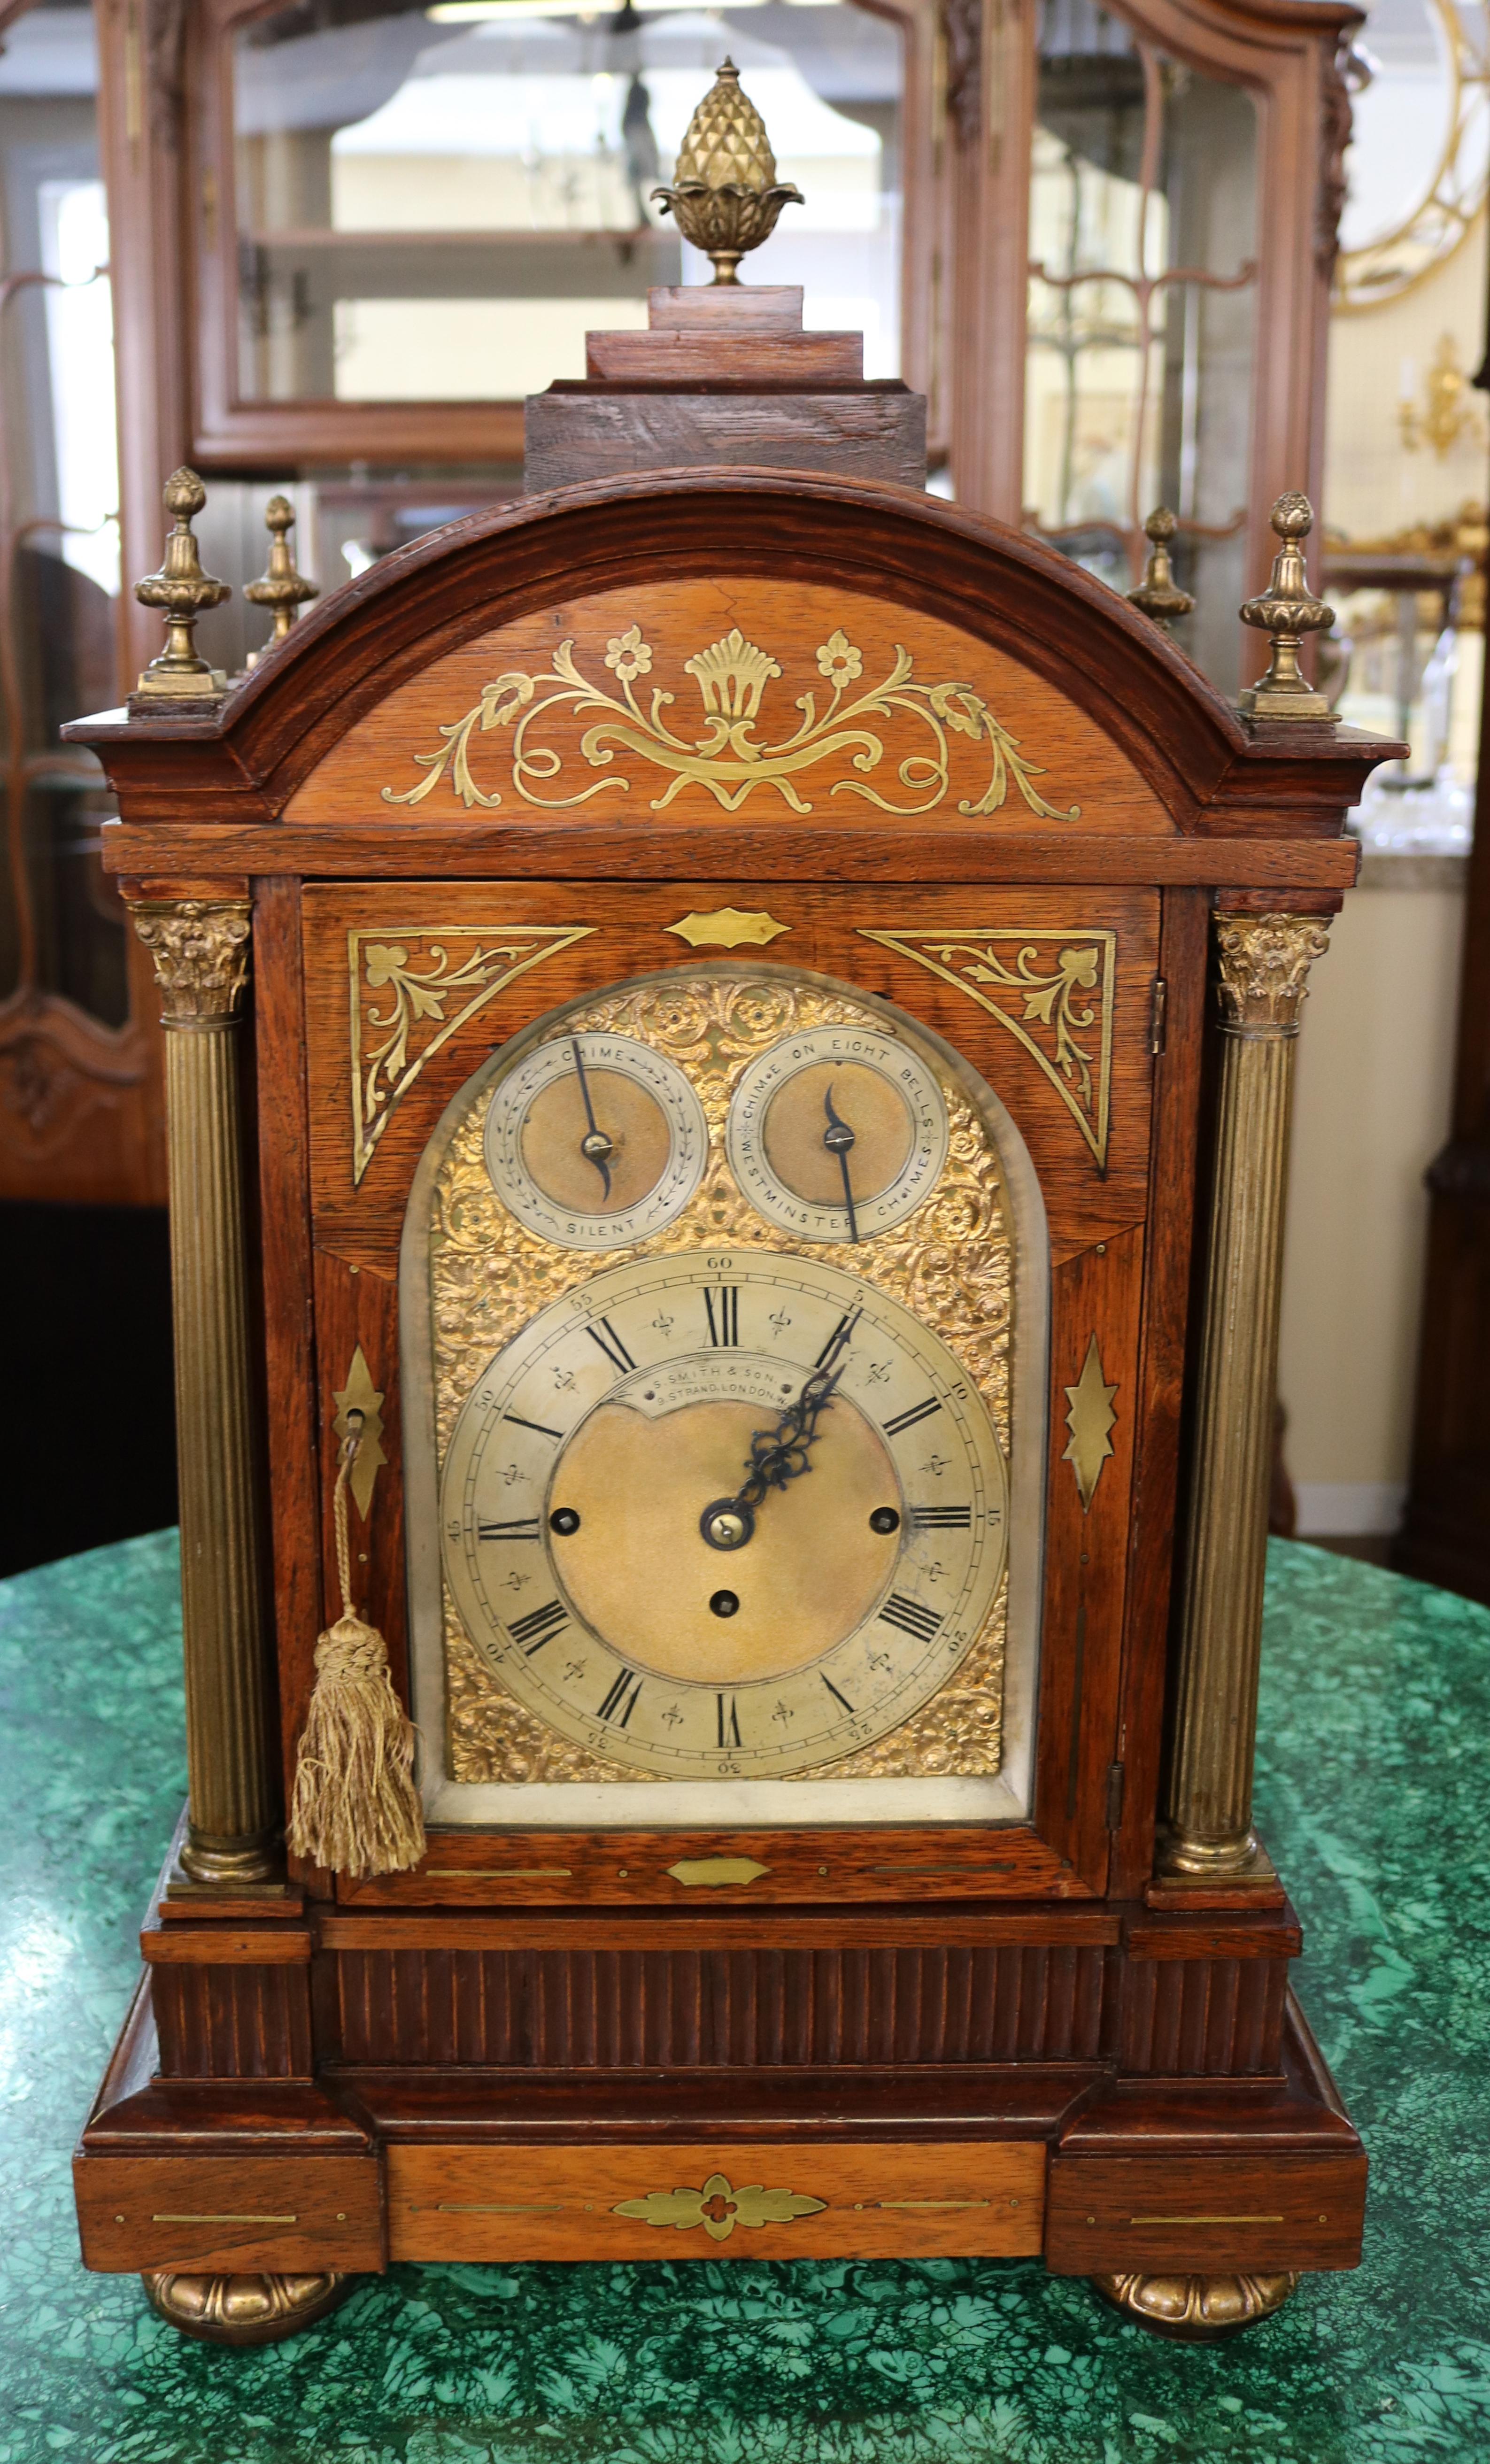 Horloge de cheminée musicale en bois de rose du 19e siècle par S. Smith & Sons London

Dimensions : 29